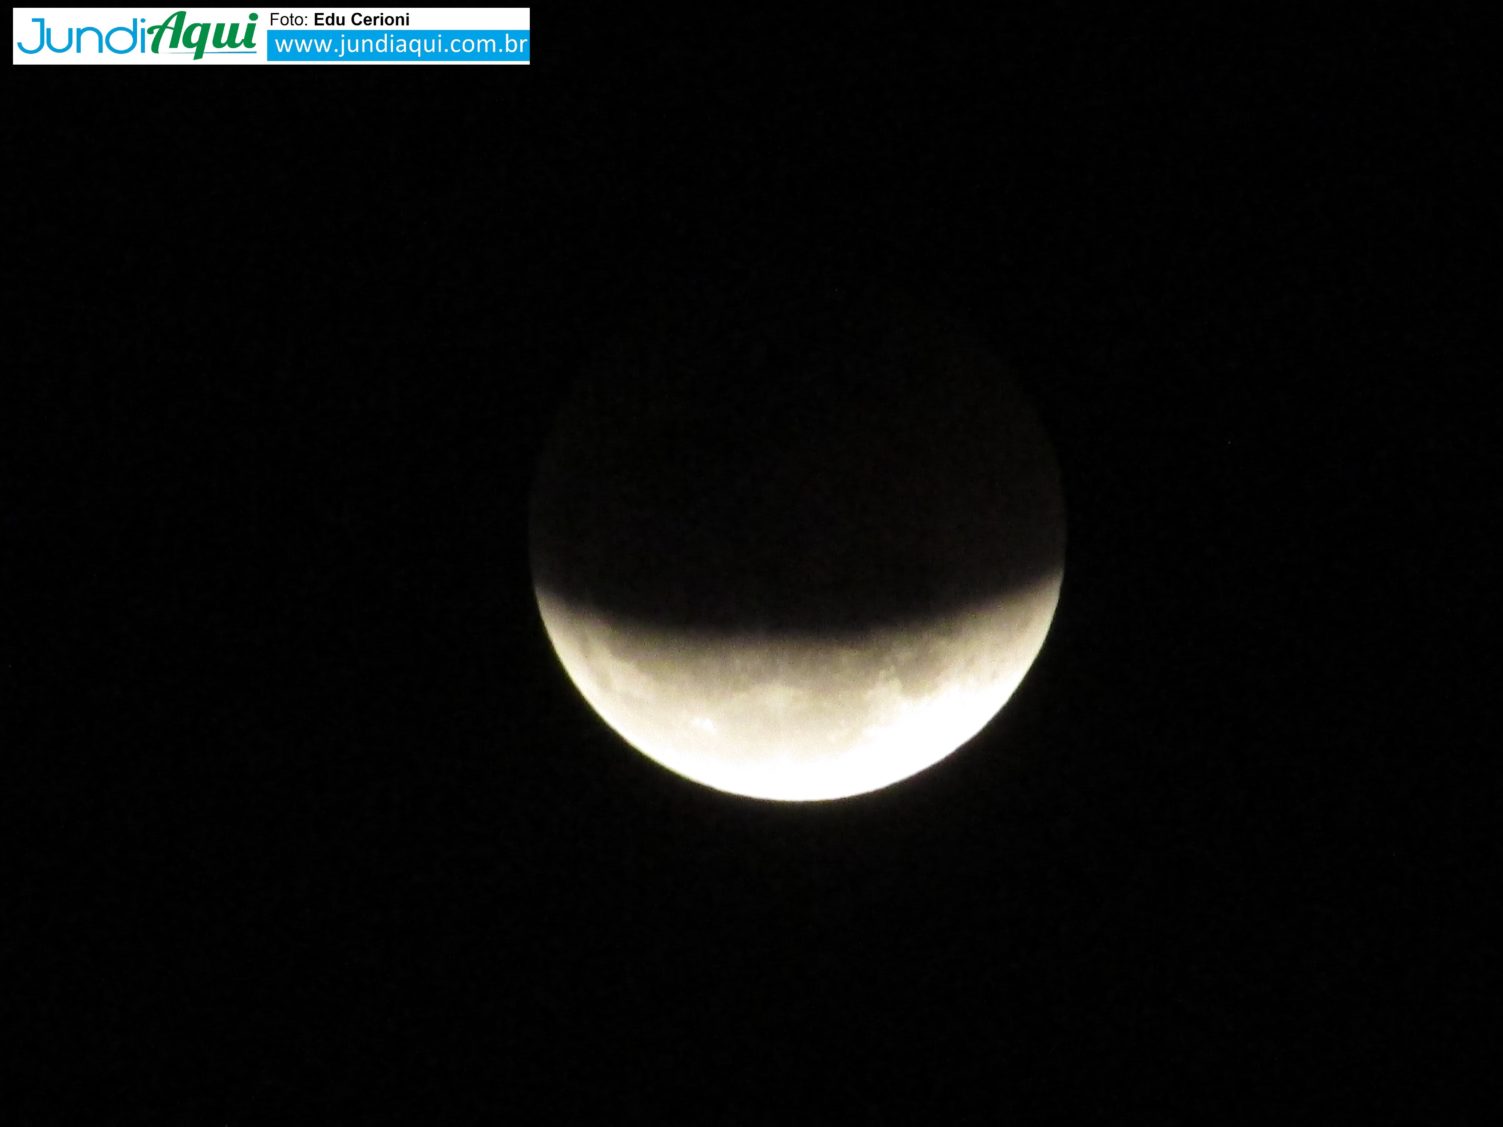  Maior eclipse lunar do século é visto a olho nu em Jundiaí